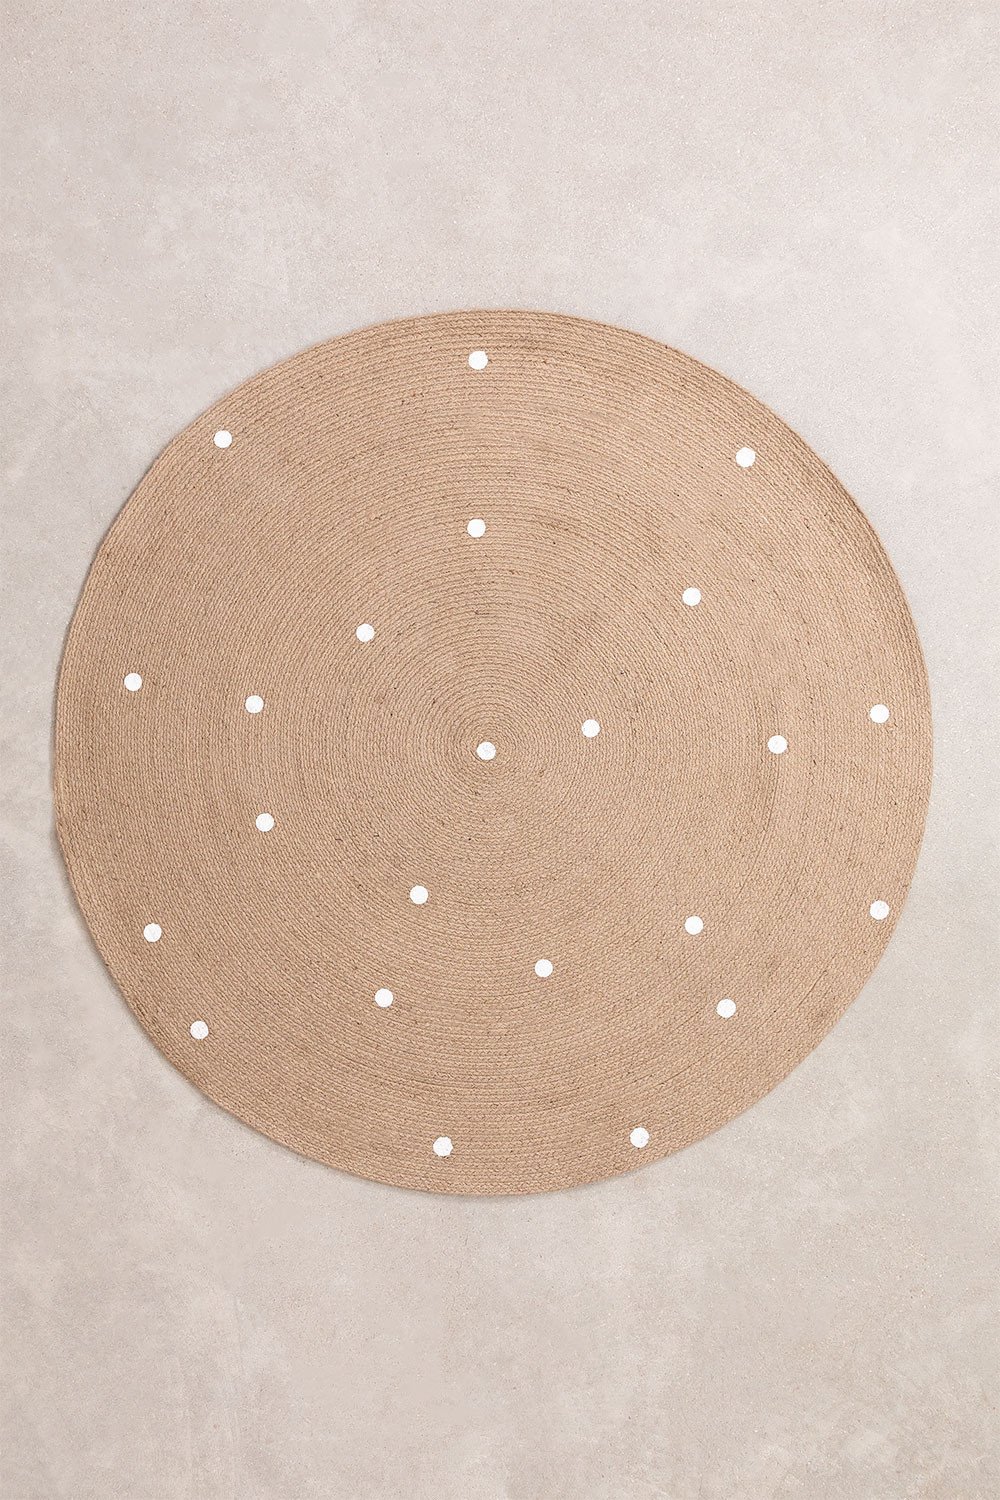 Tappeto rotondo in iuta naturale (Ø150 cm) Naroh, immagine della galleria 1